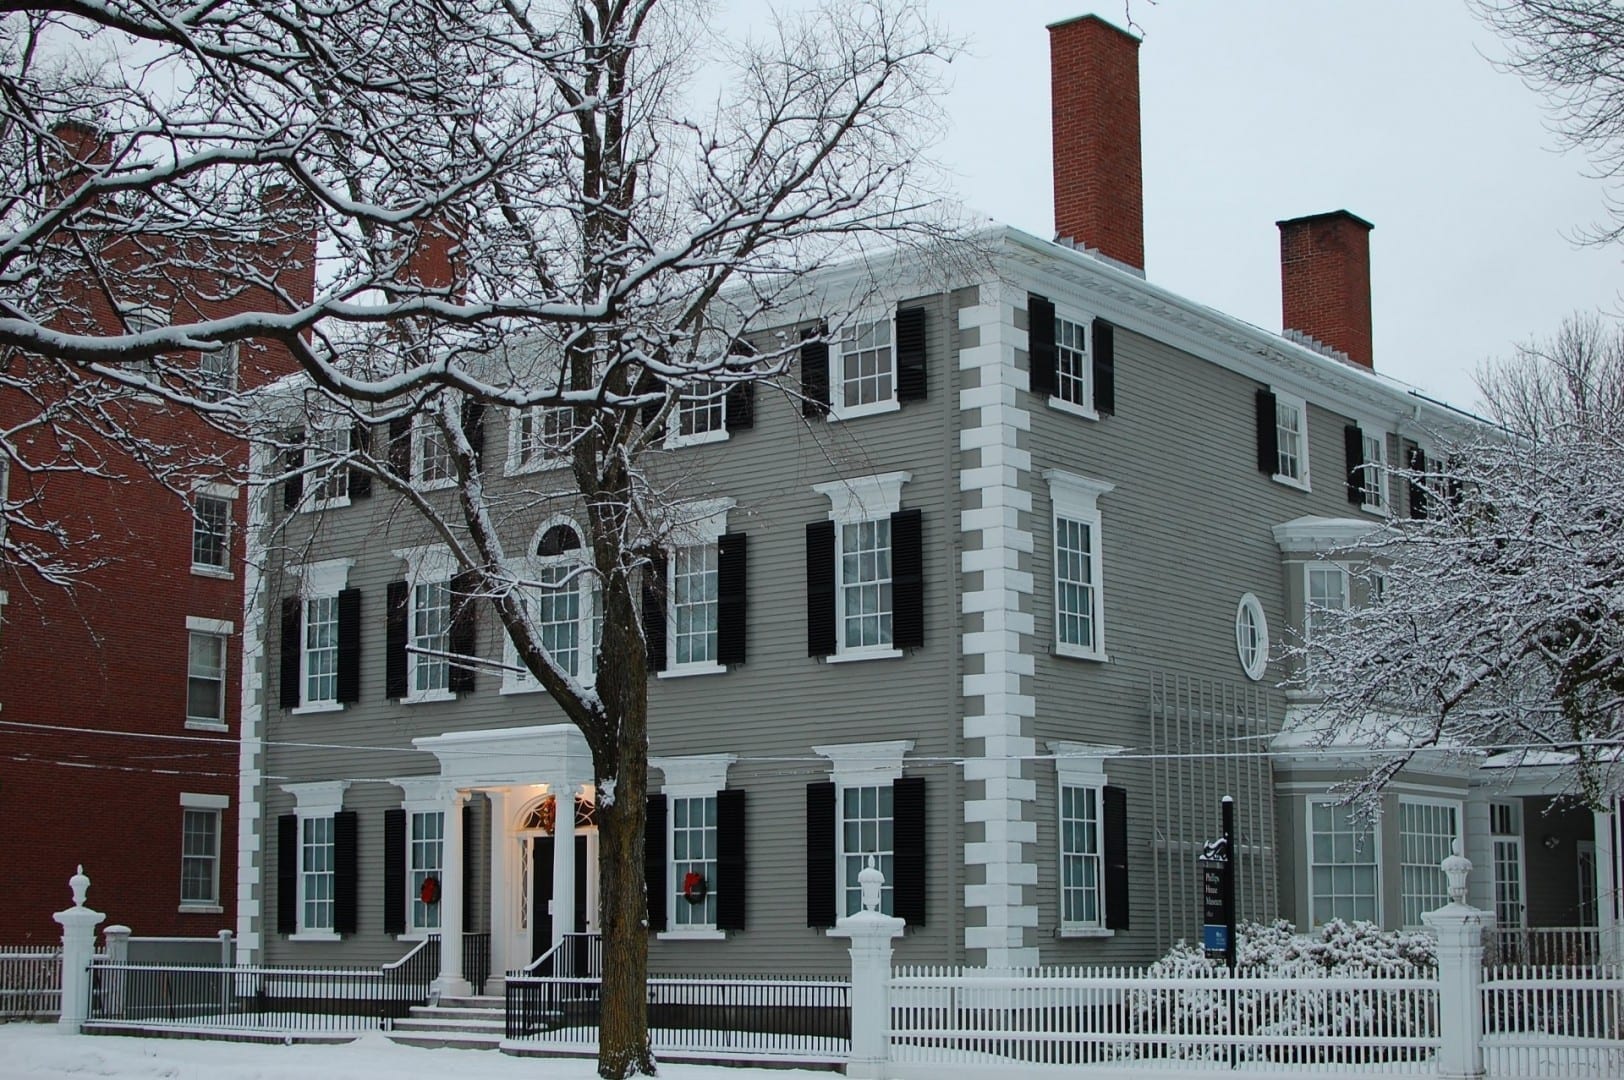 Ubicado en el Distrito Histórico Samuel McIntyre - 34 Chestnut Street por Samuel McIntire (1800) Salem MA Estados Unidos